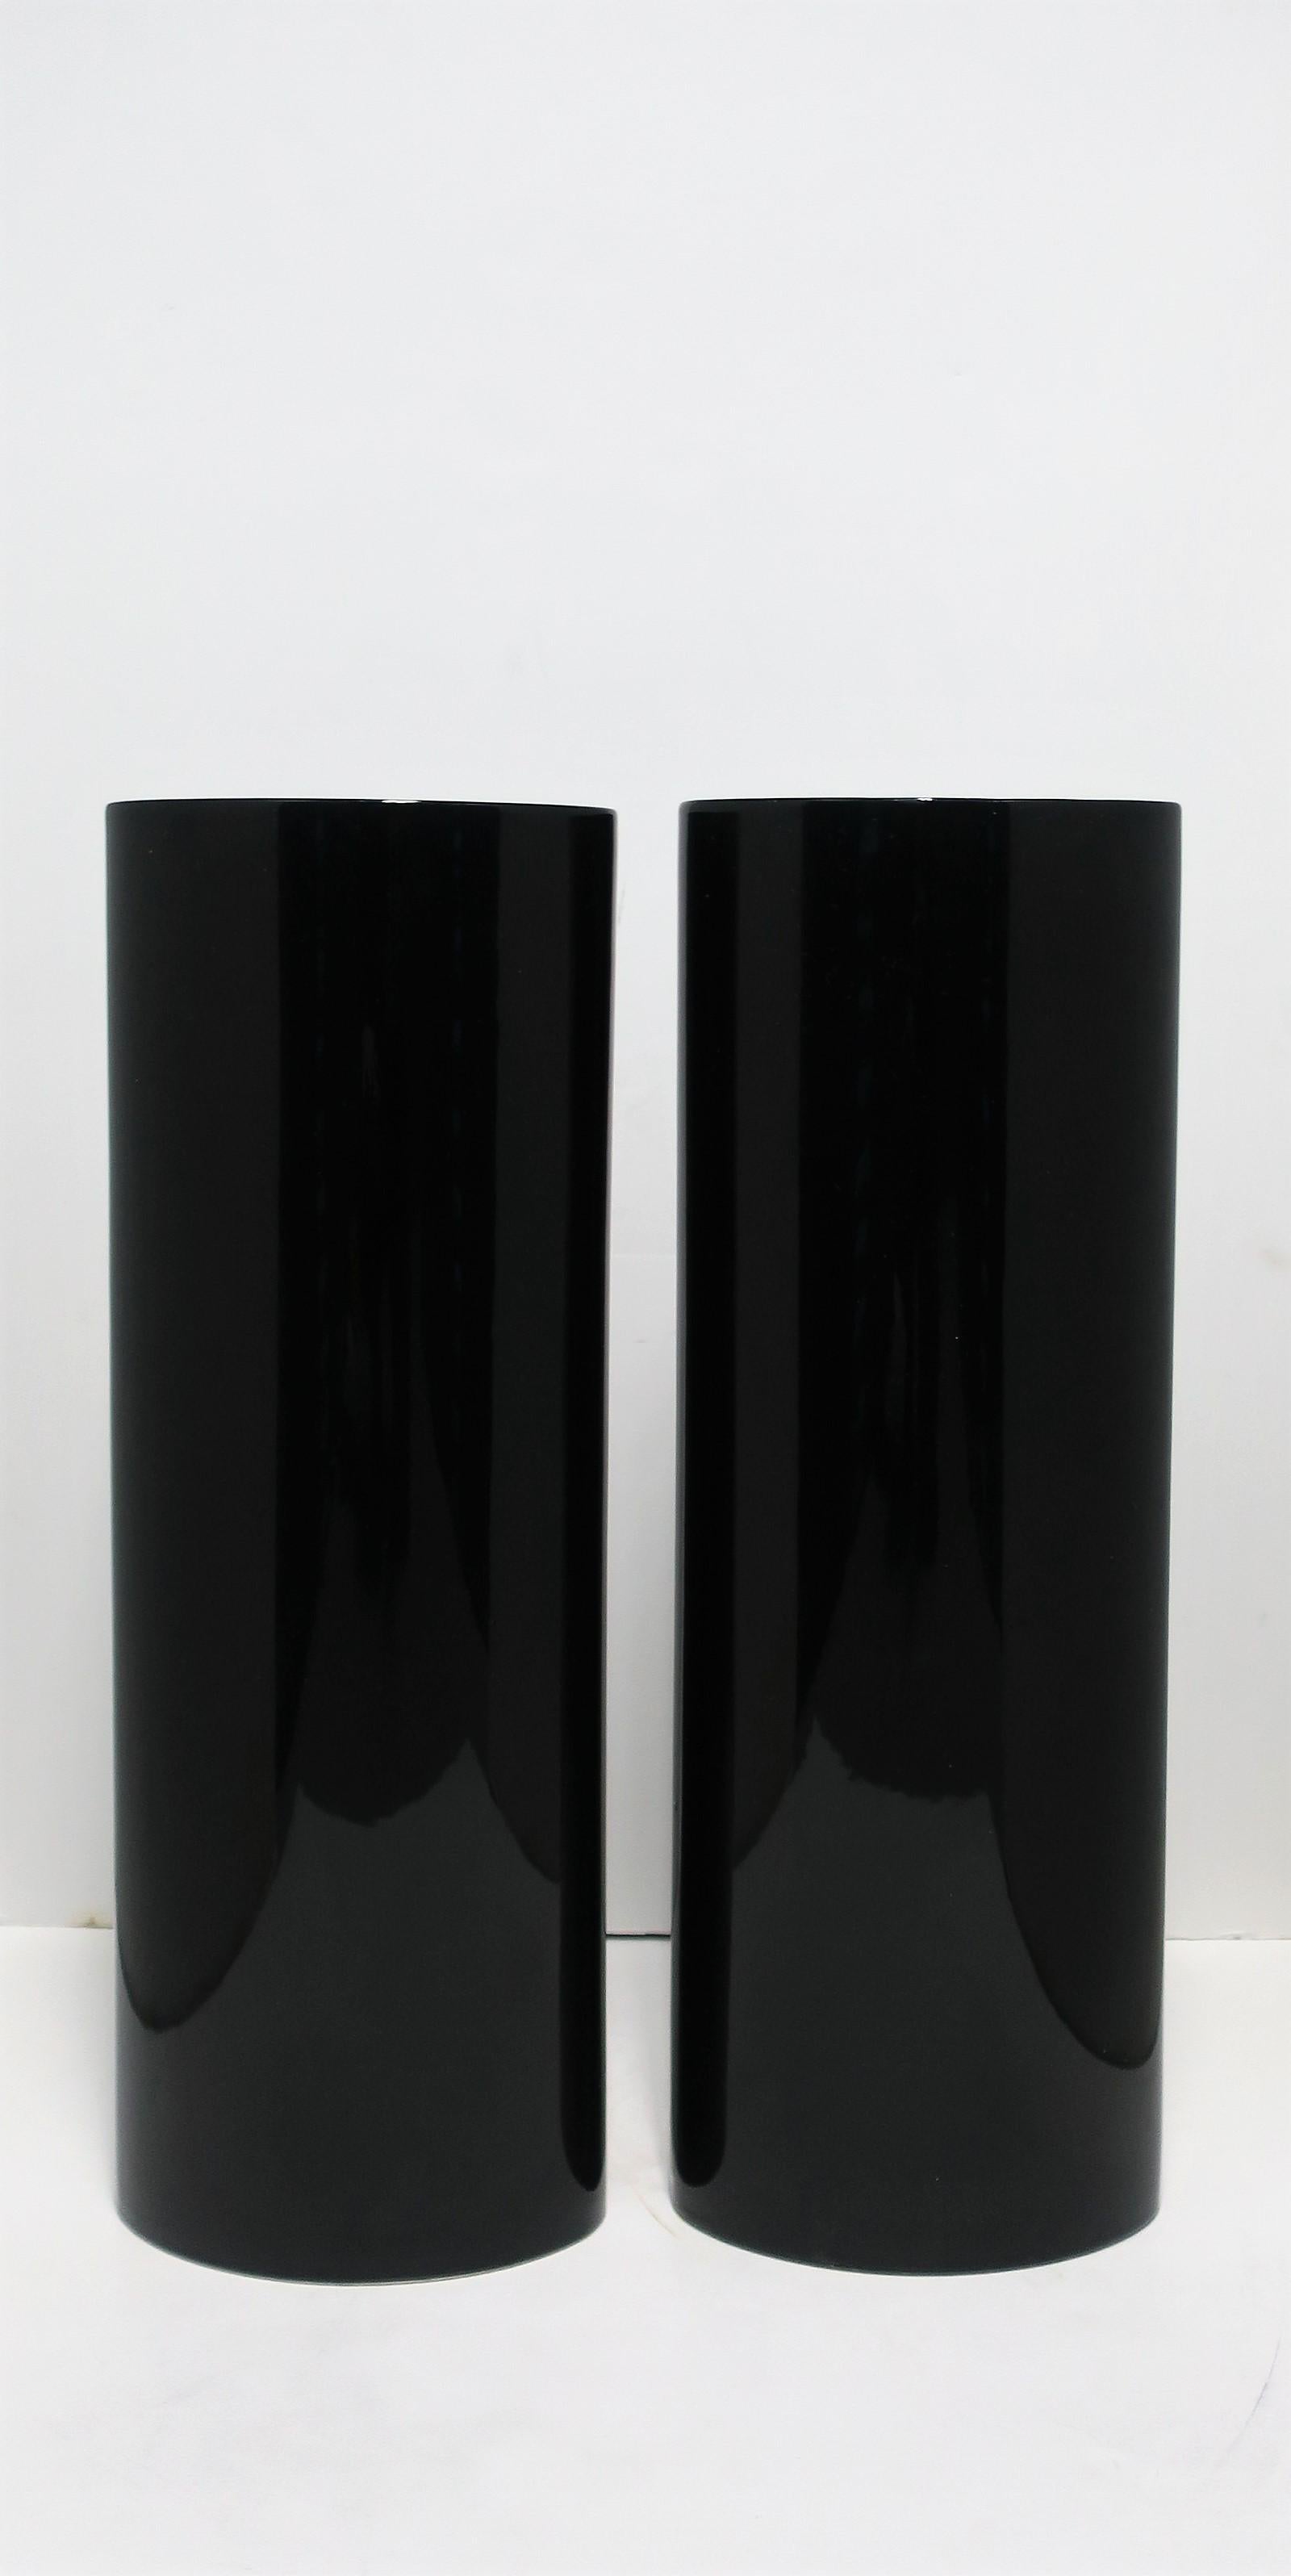 Ein schönes Paar sehr hoher europäischer Vasen aus schwarzer Keramik im organisch-modernen Stil, Portugal, ca. Ende des 20. Jahrhunderts, 1990er Jahre. Vasen aus glasierter Keramik haben ein hochglänzendes oder lackiertes Aussehen und fühlen sich